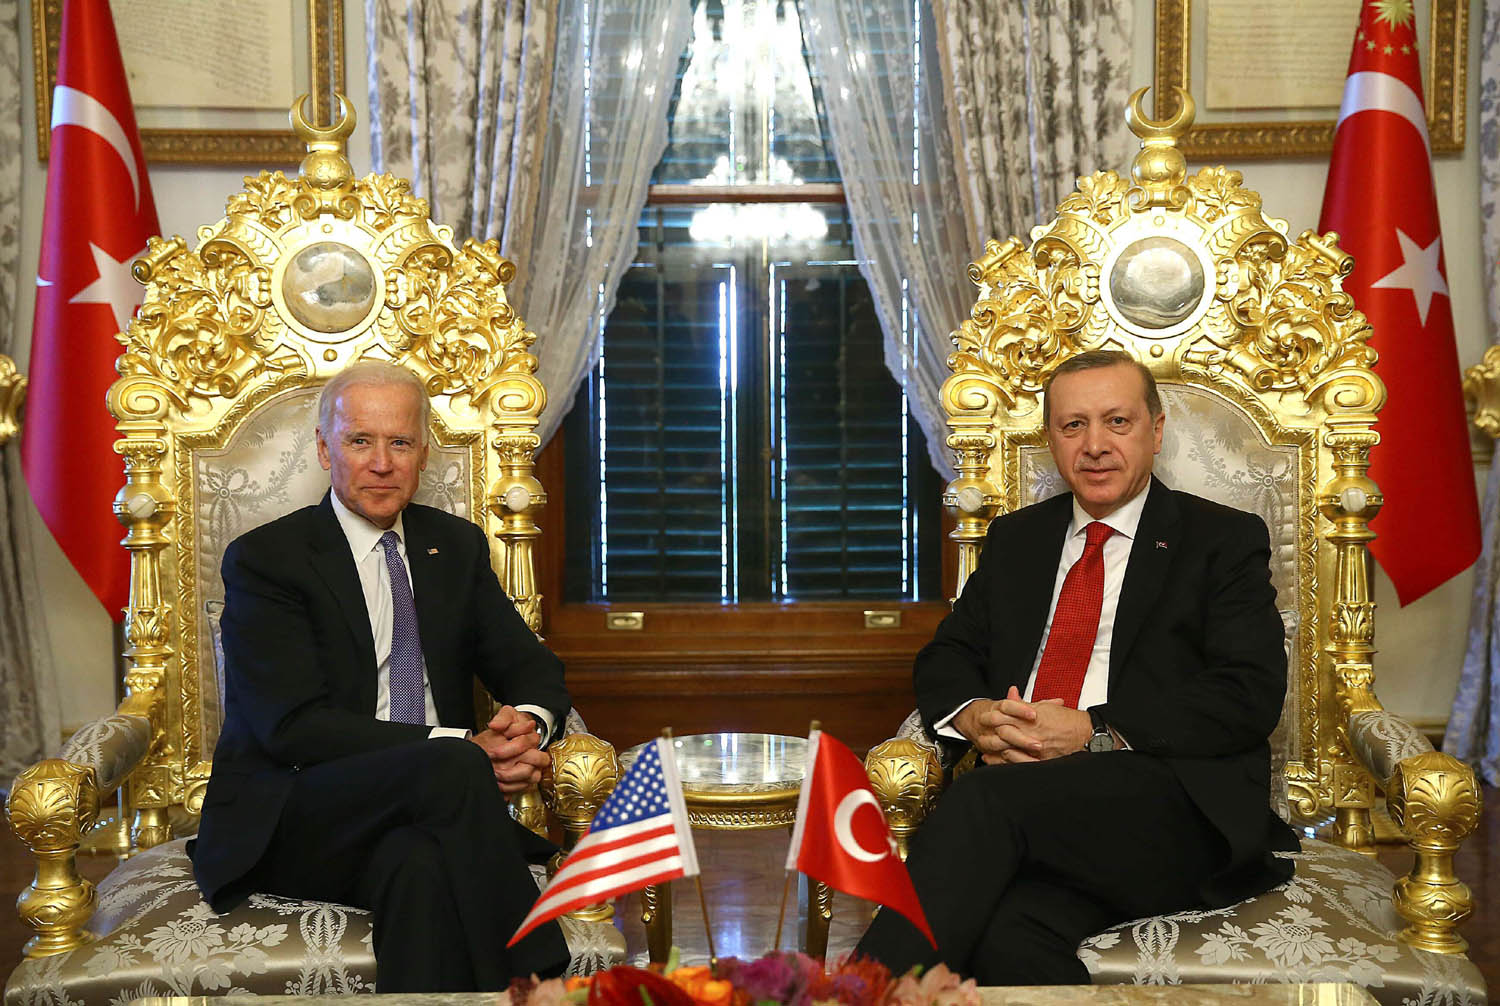 الرئيس التركي رجب طيب أردوغان يستقبل نائب الرئيس الأميركي في حينه جو بادين في اسطنبول